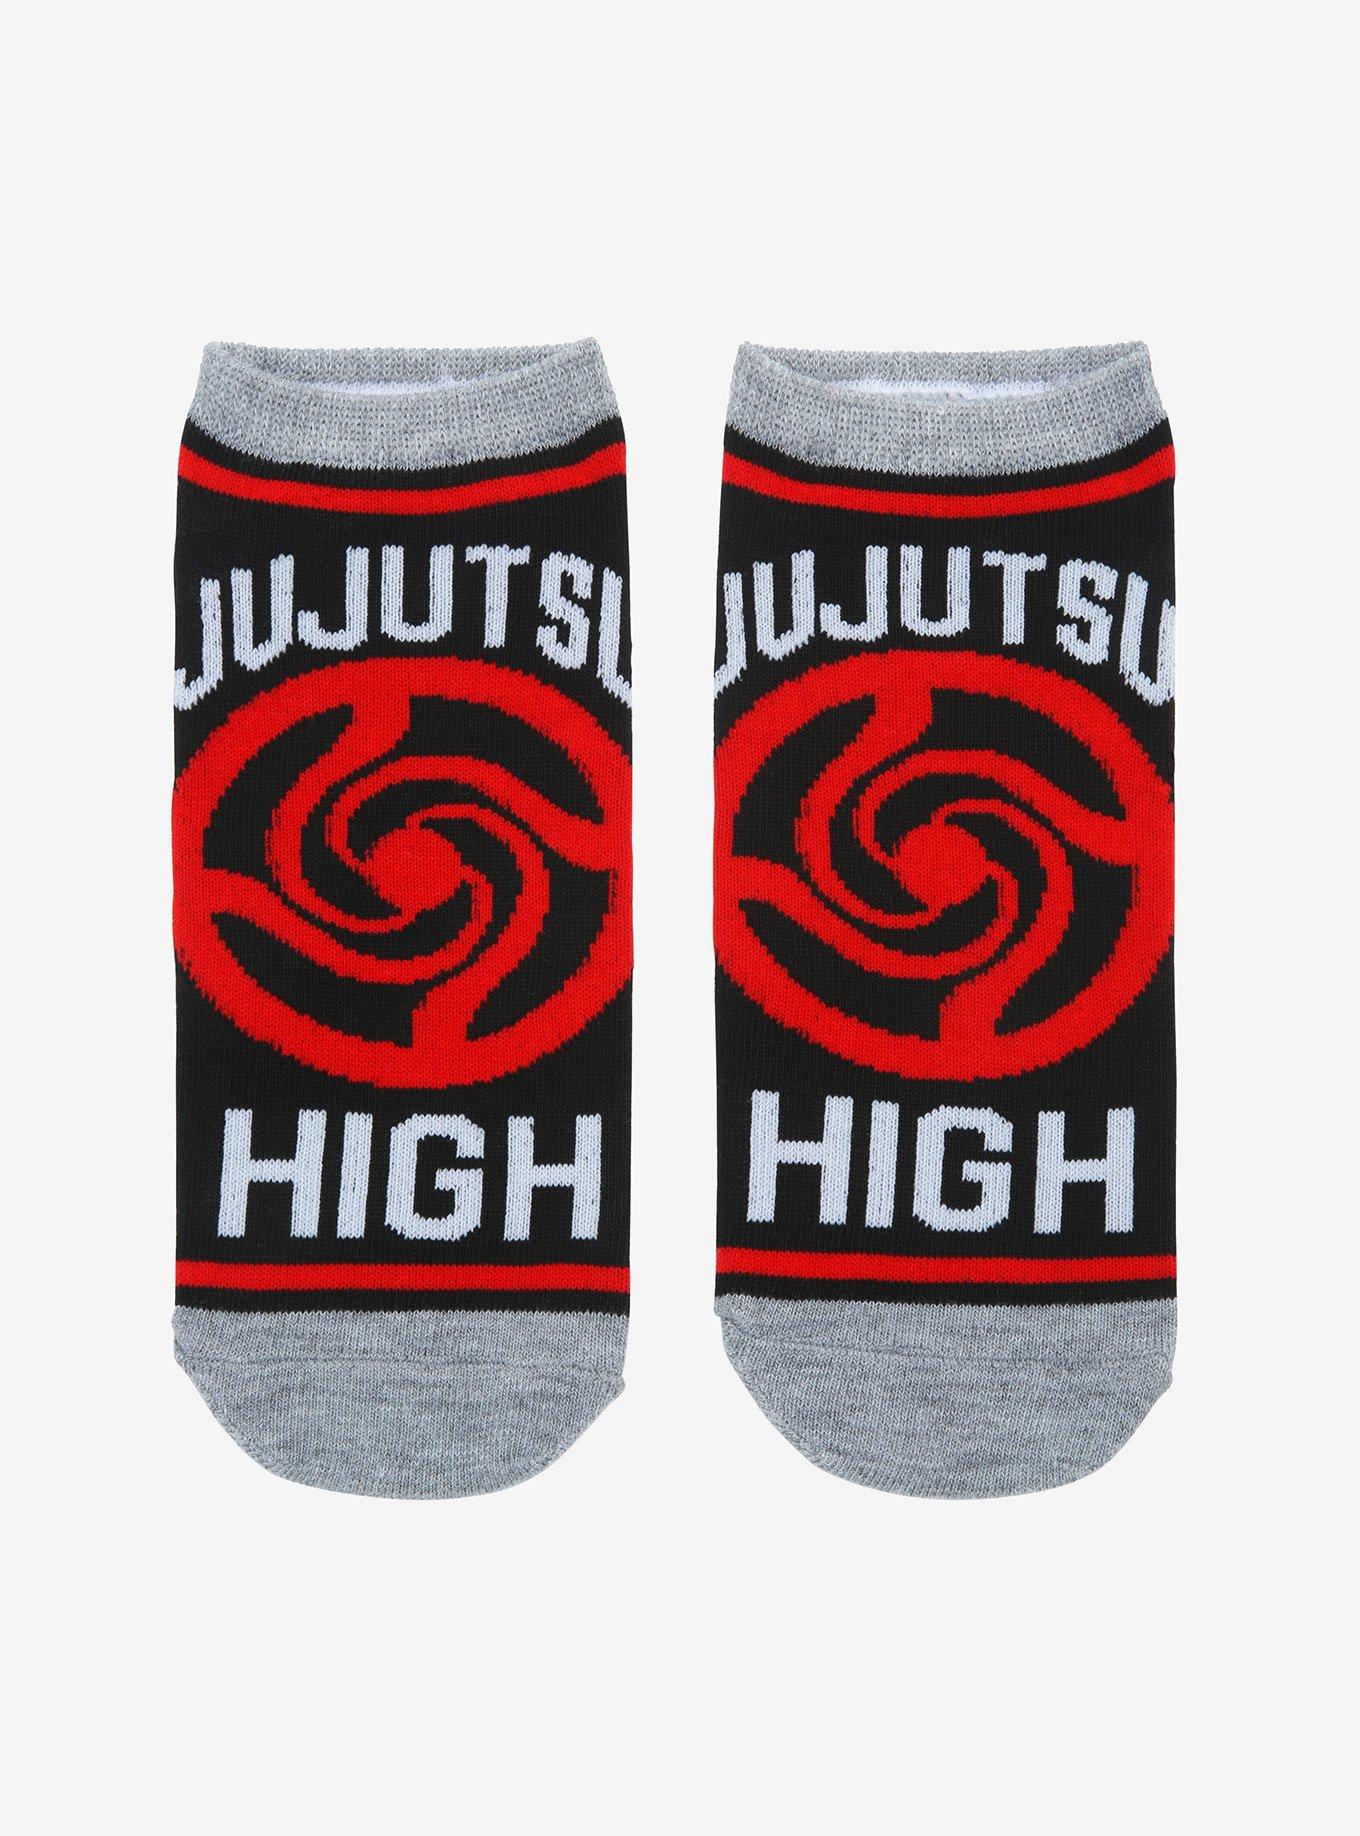 Jujutsu Kaisen Jujutsu High Logo No-Show Socks, , hi-res